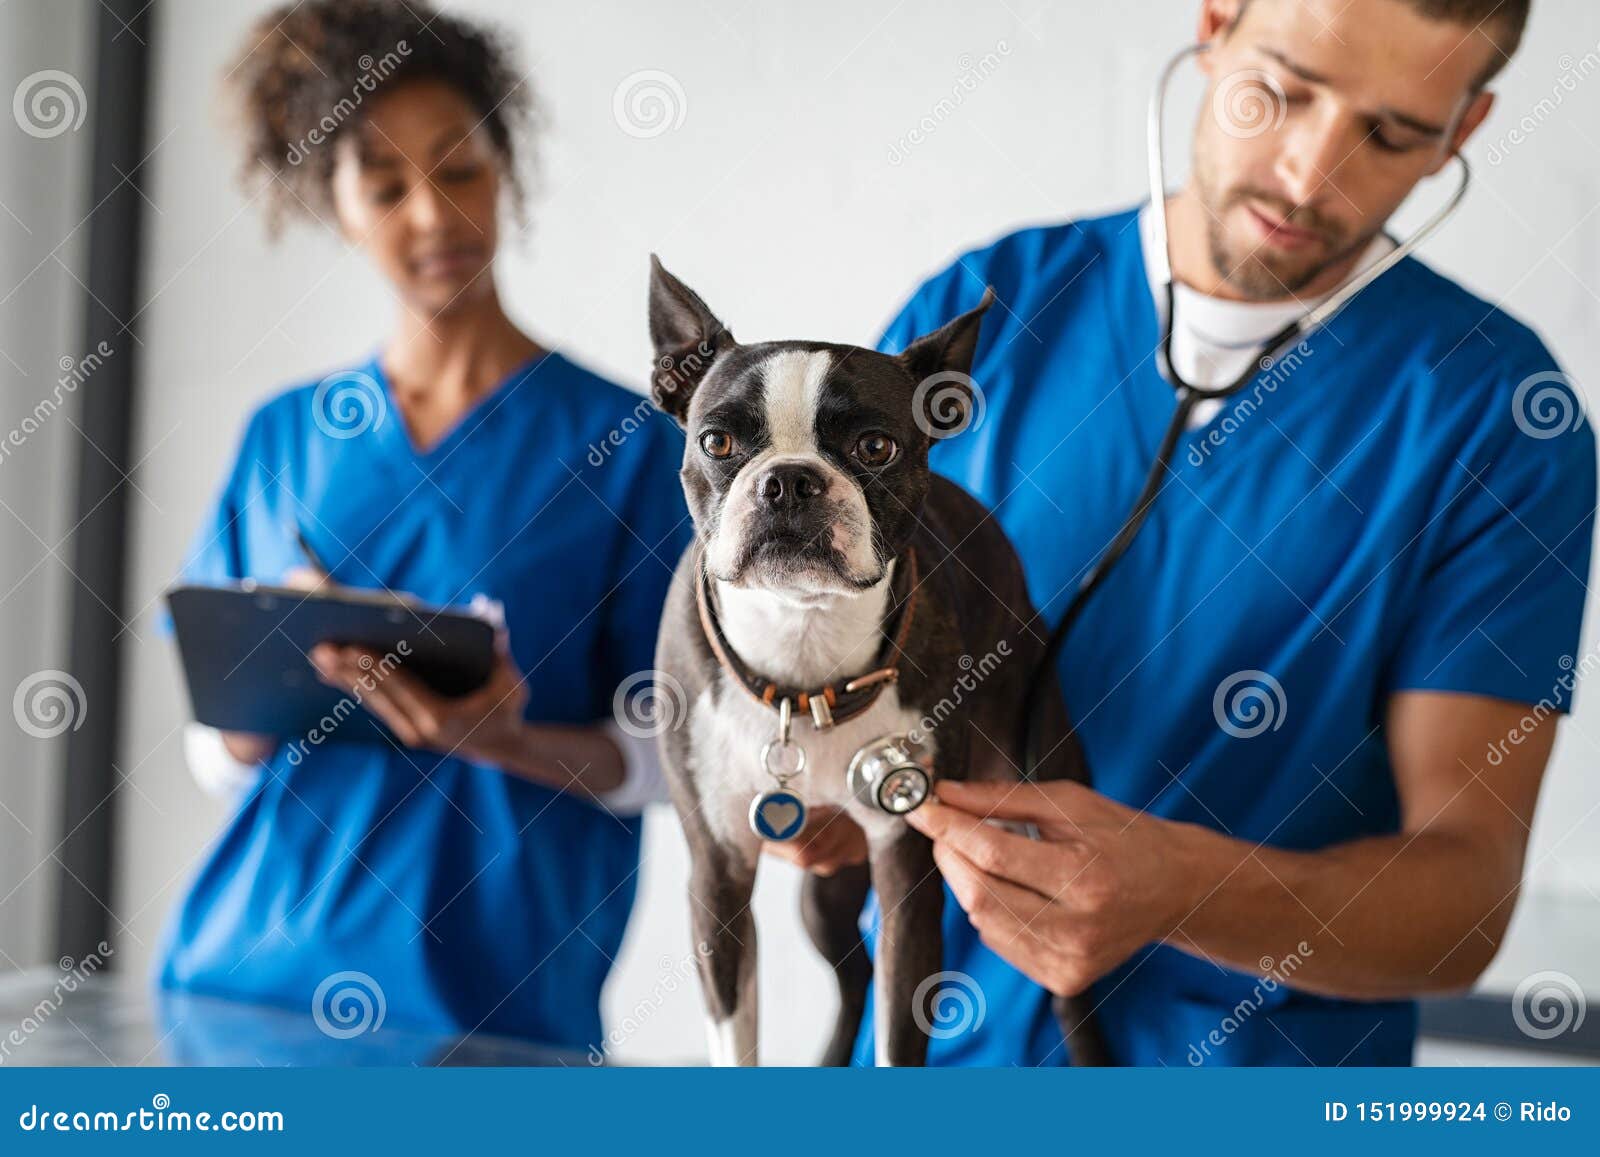 vet examining dog